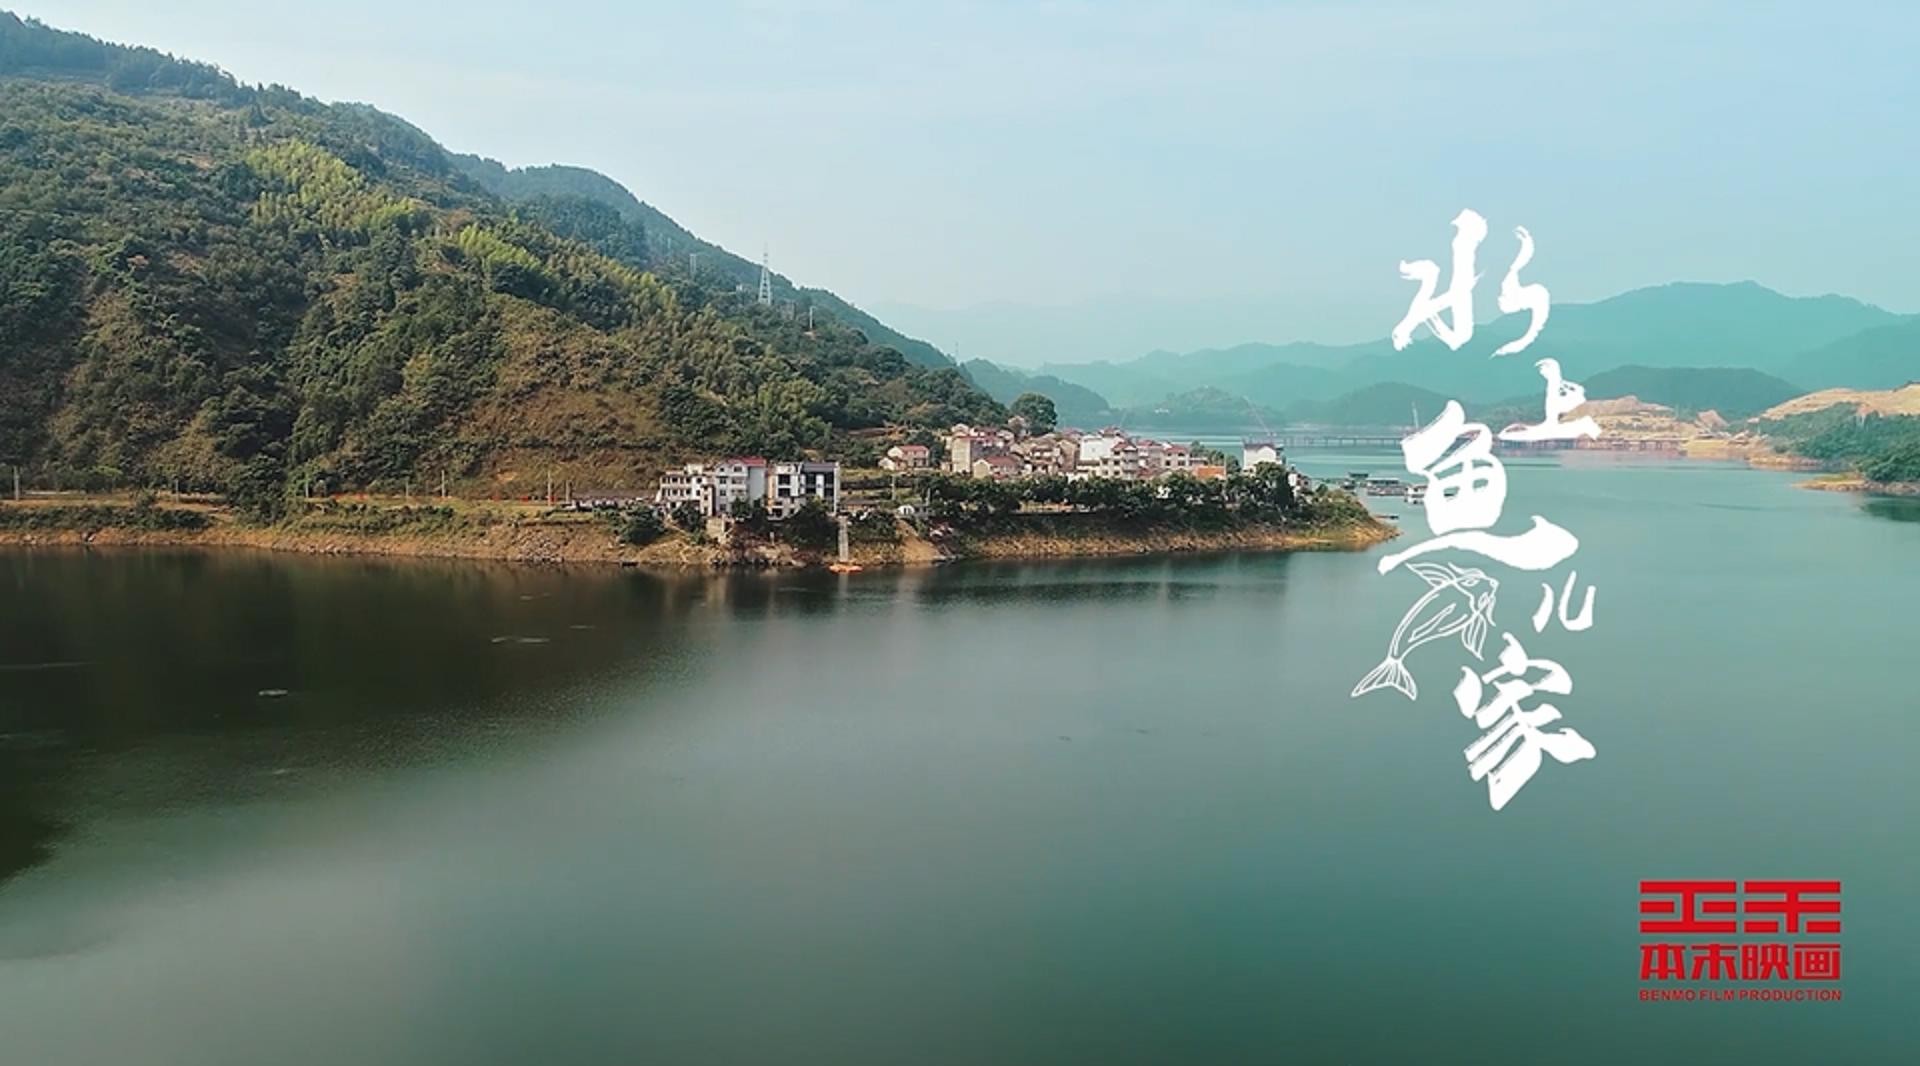 千岛湖旅游系列宣传片——《水上鱼儿家》 